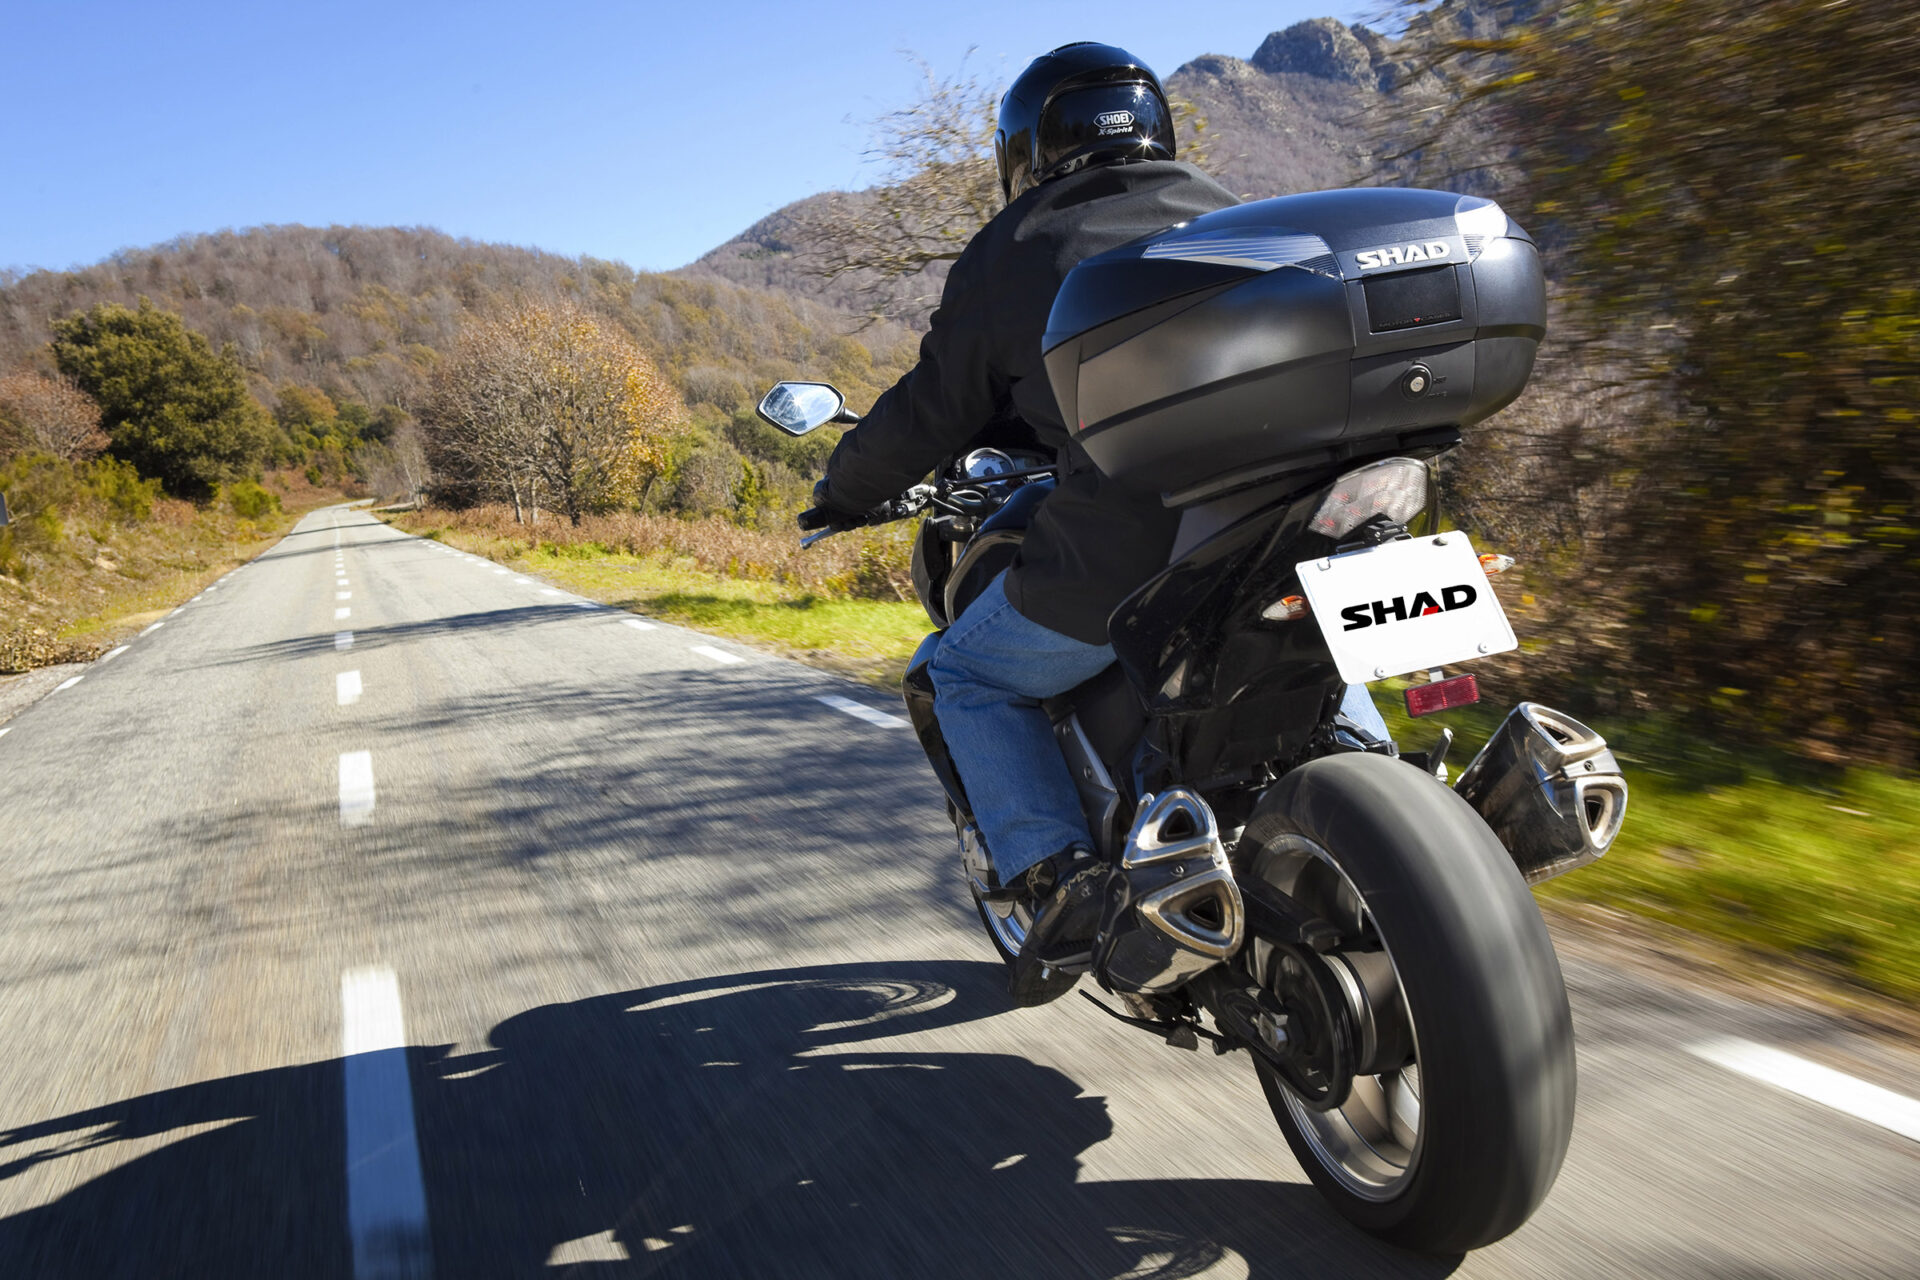 SHAD JAPAN – バイク用トップケースブランド、SHAD。本物にこだわるライダーへ ヨーロッパが認めたトップケースのスタンダード、シャッド。